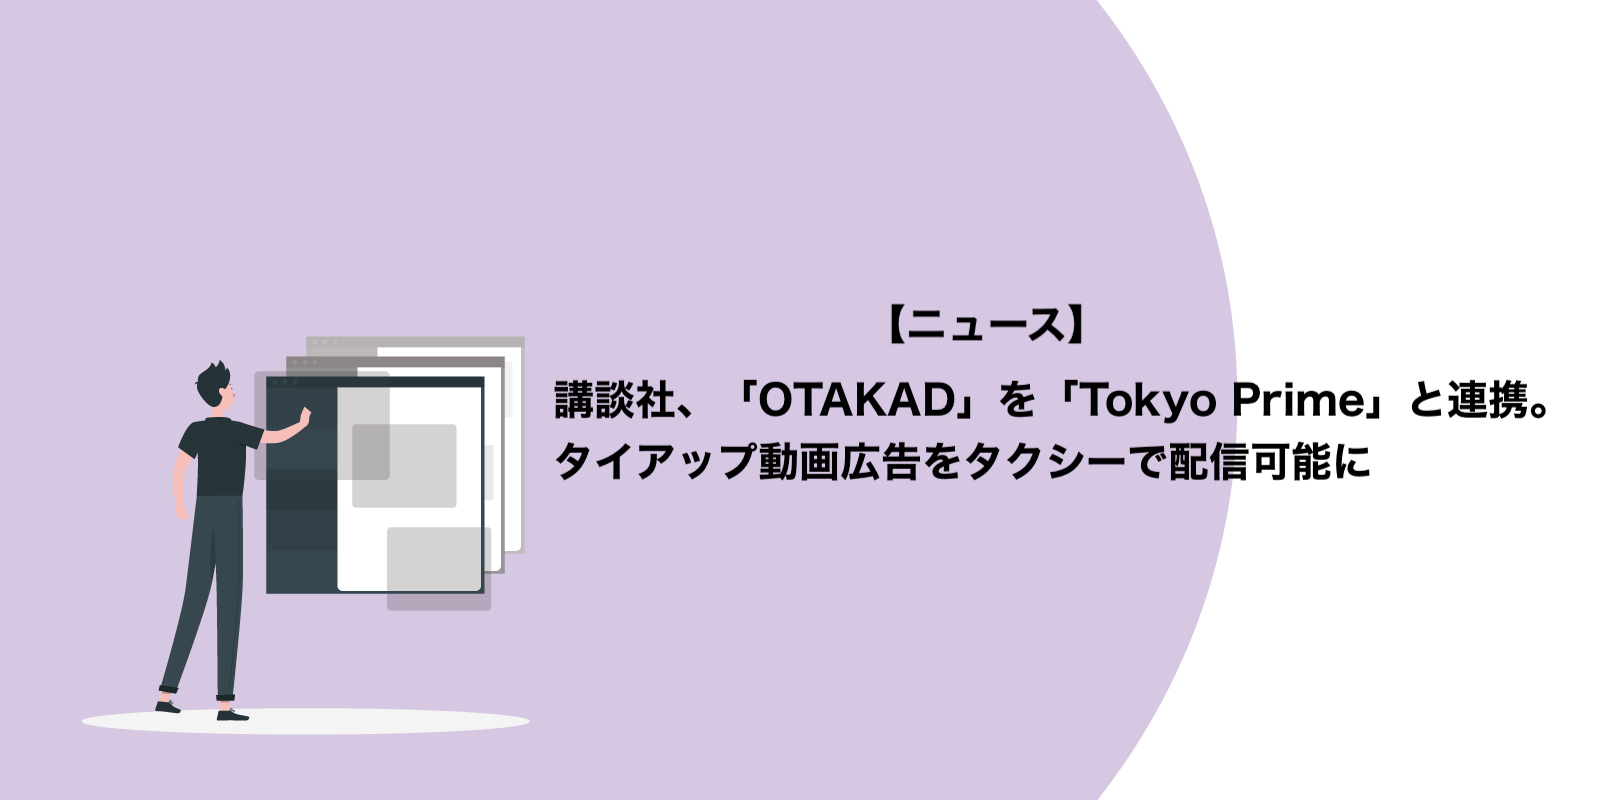 講談社、OTAKADをTokyo Primeと連携。タイアップ動画広告をタクシーで配信可能に